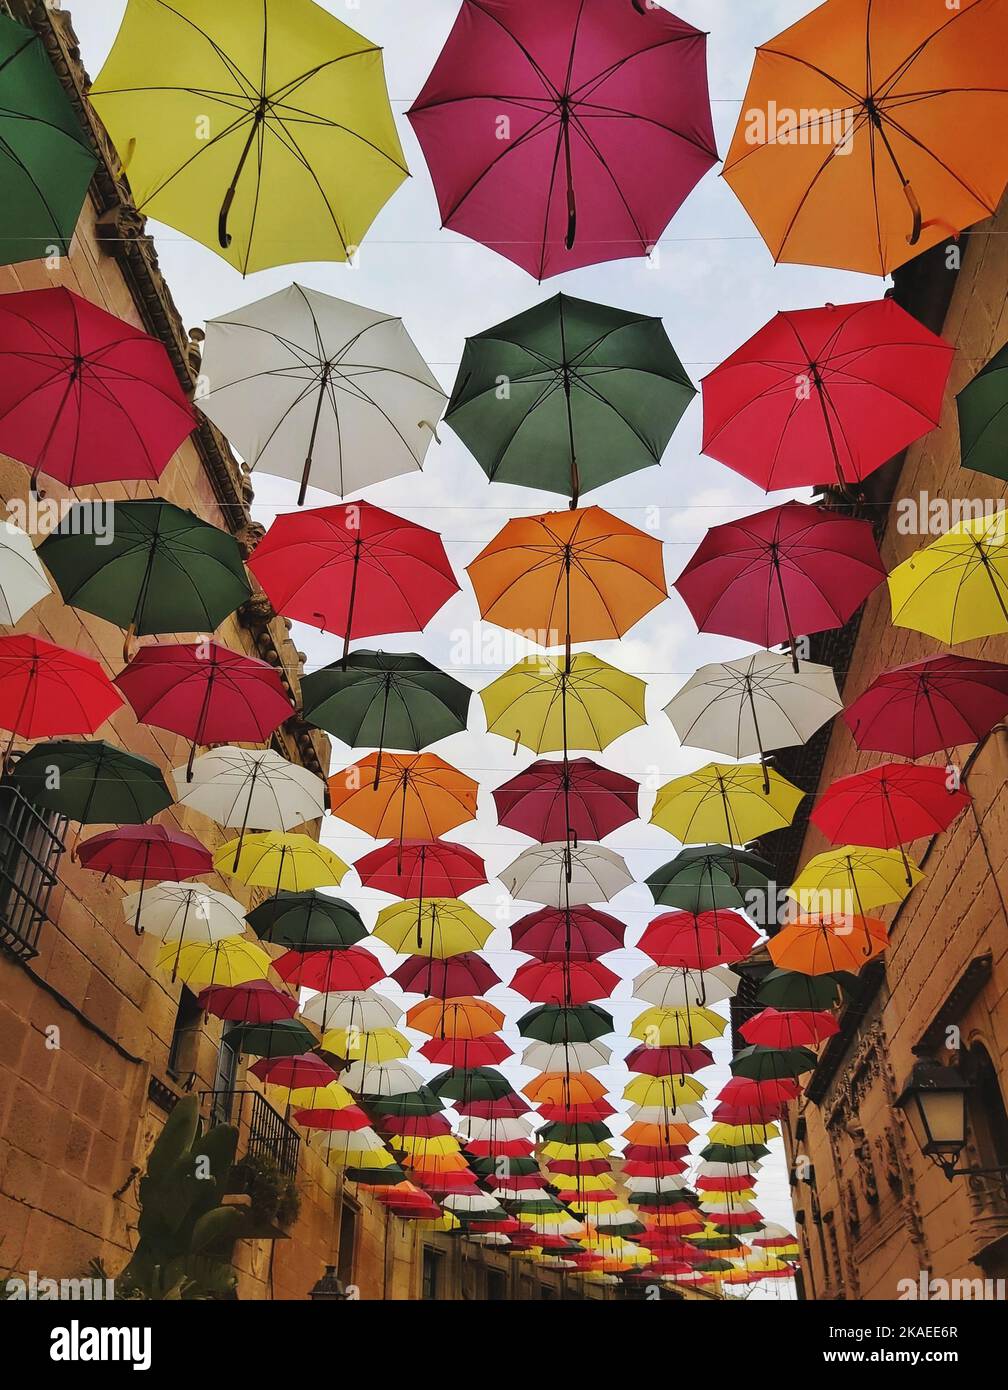 Las coloridas sombrillas cuelgan de una calle típica del centro de Barcelona  Fotografía de stock - Alamy